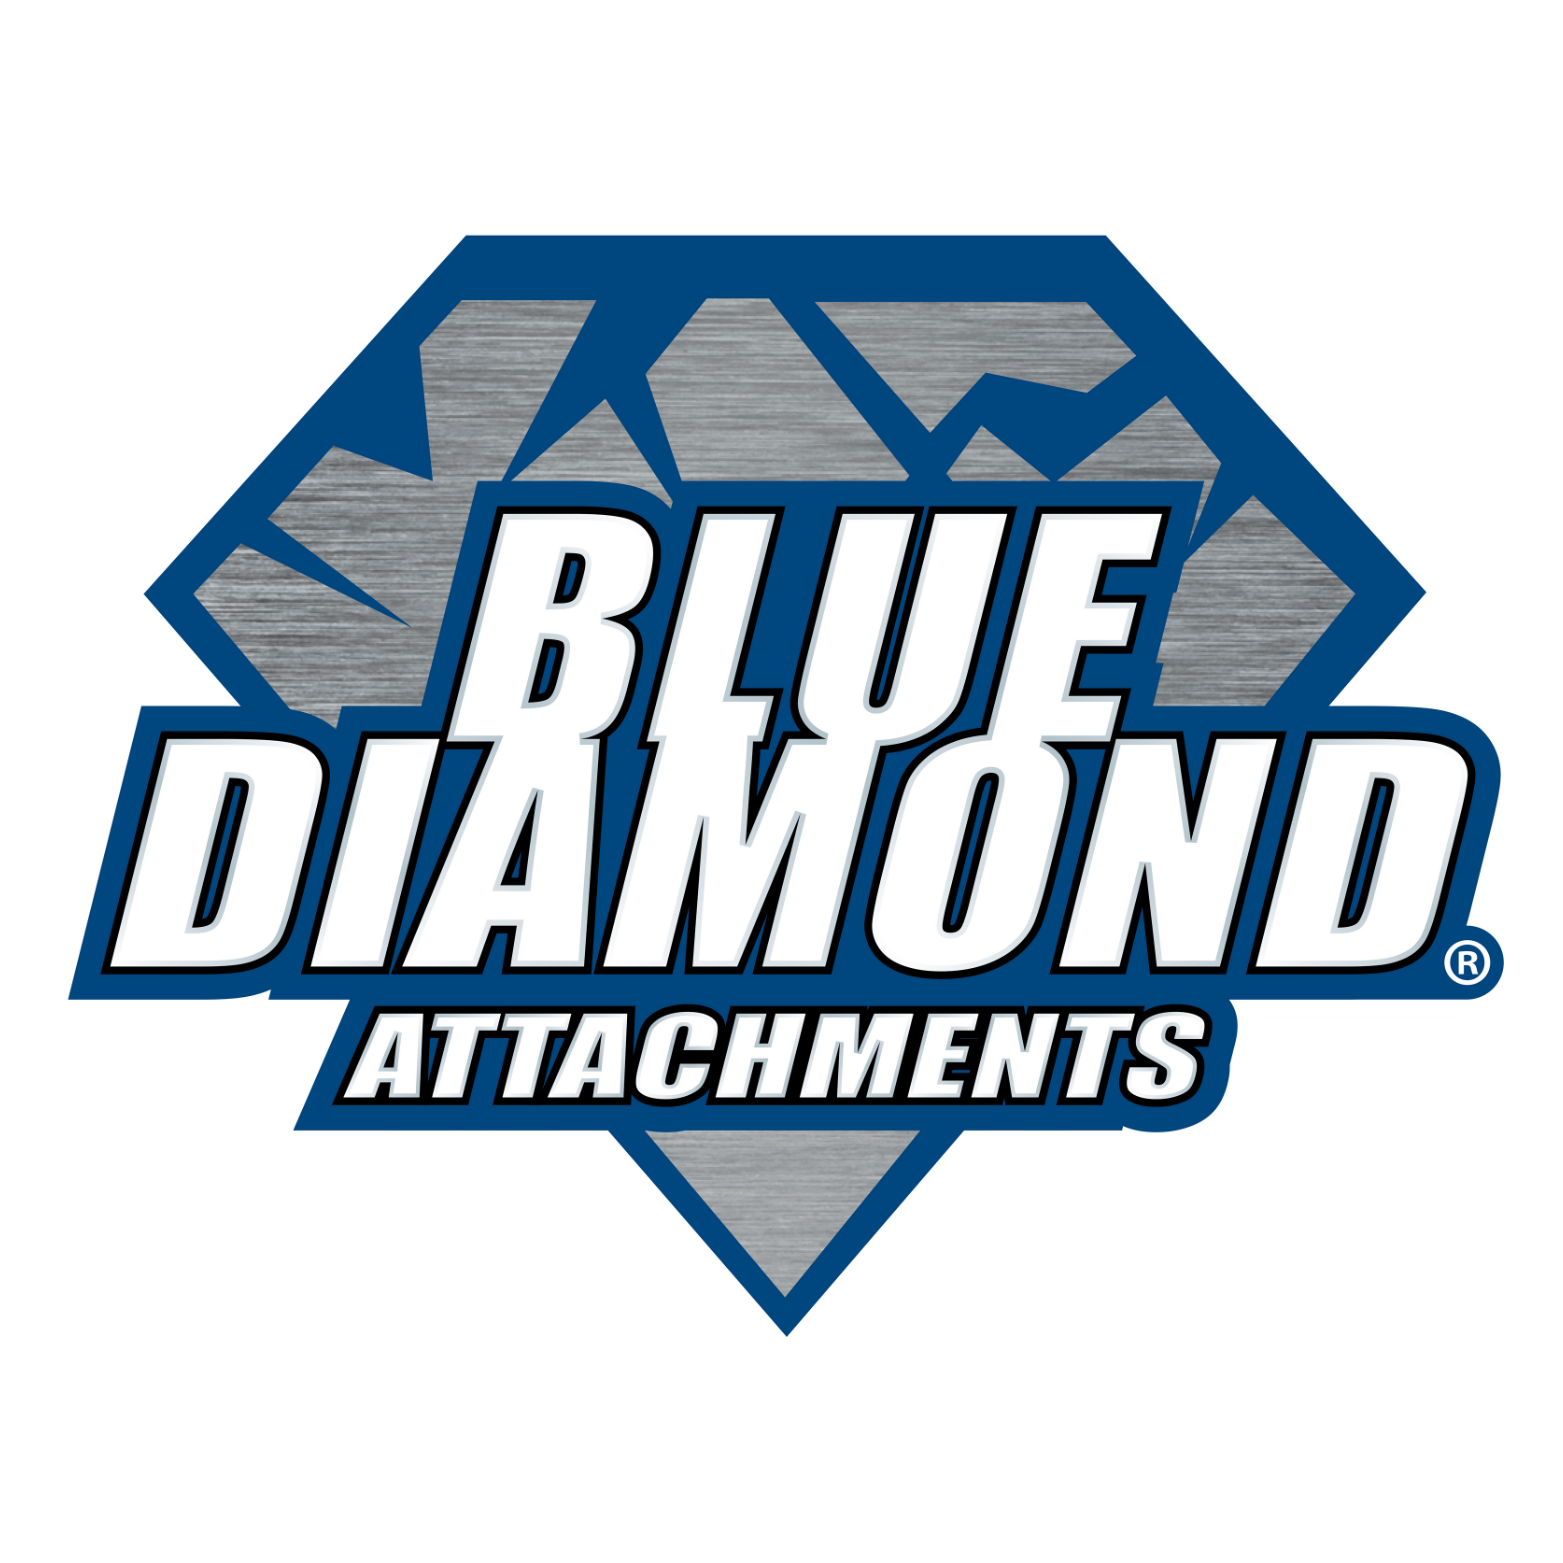 blue-diamond-attachments-514011_300x300_1